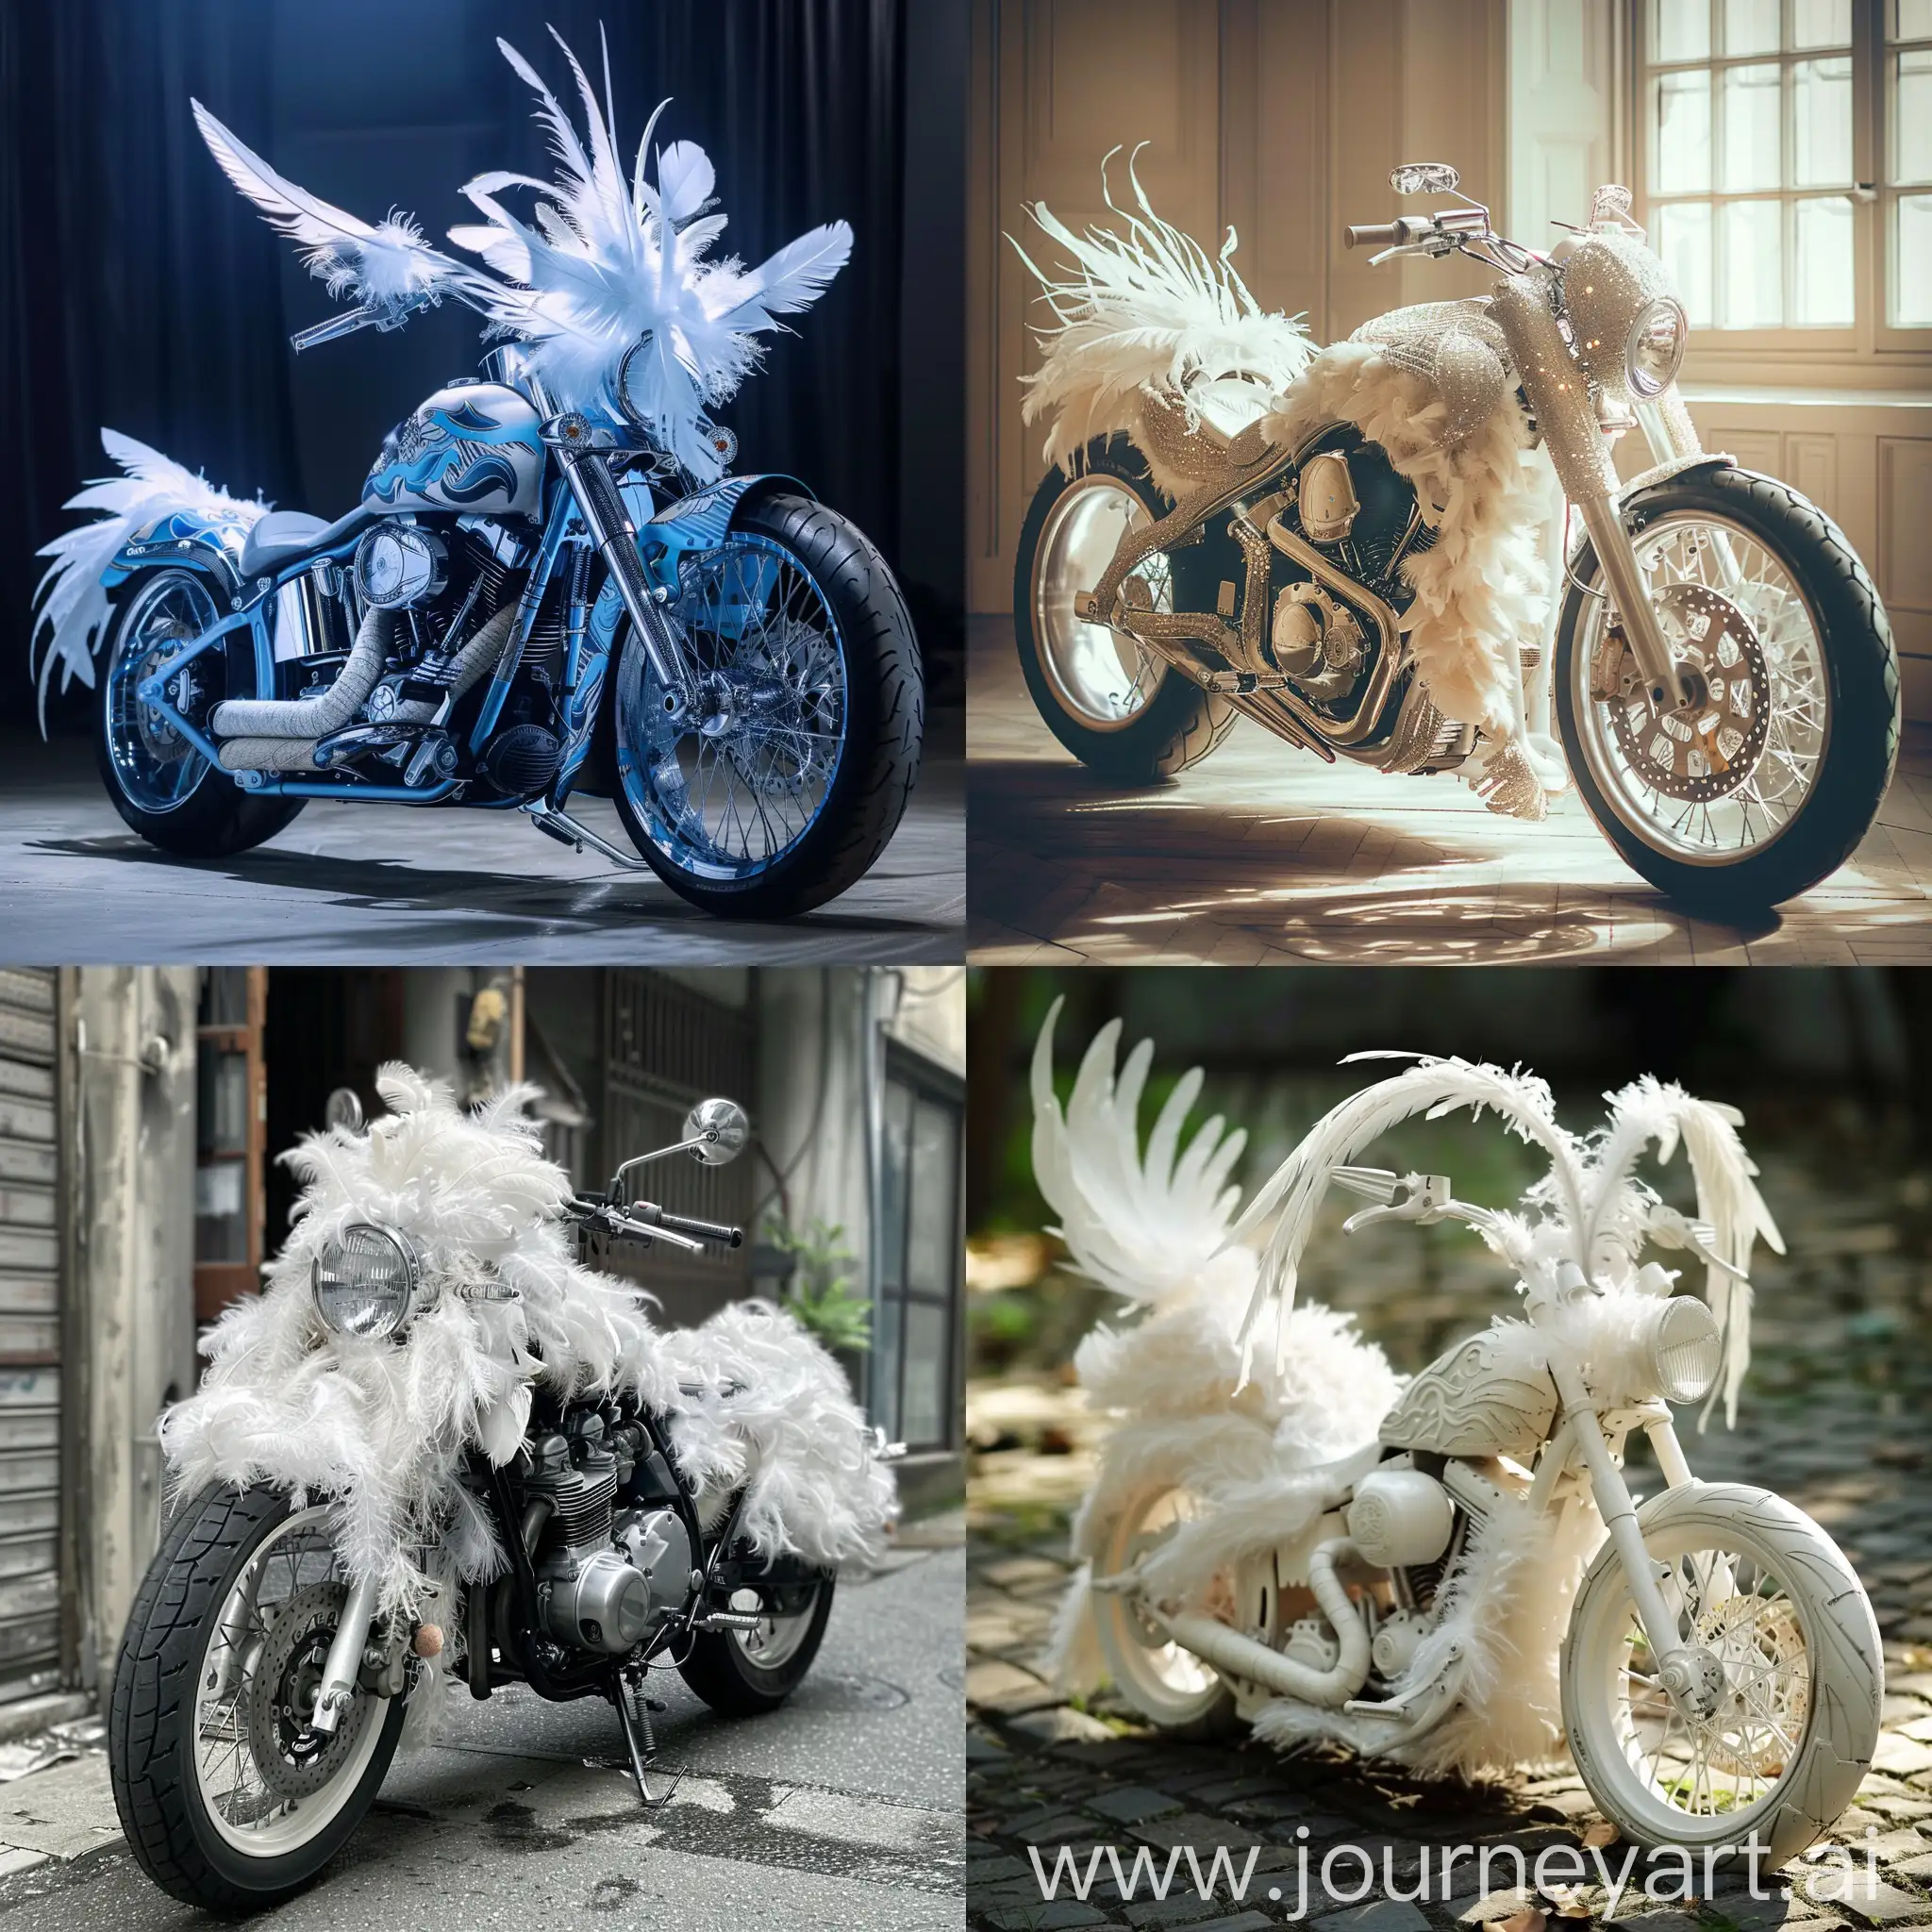 Sepeda motor kombinasi dengan bulu super lembut terlihat sangat cantik dan elegan